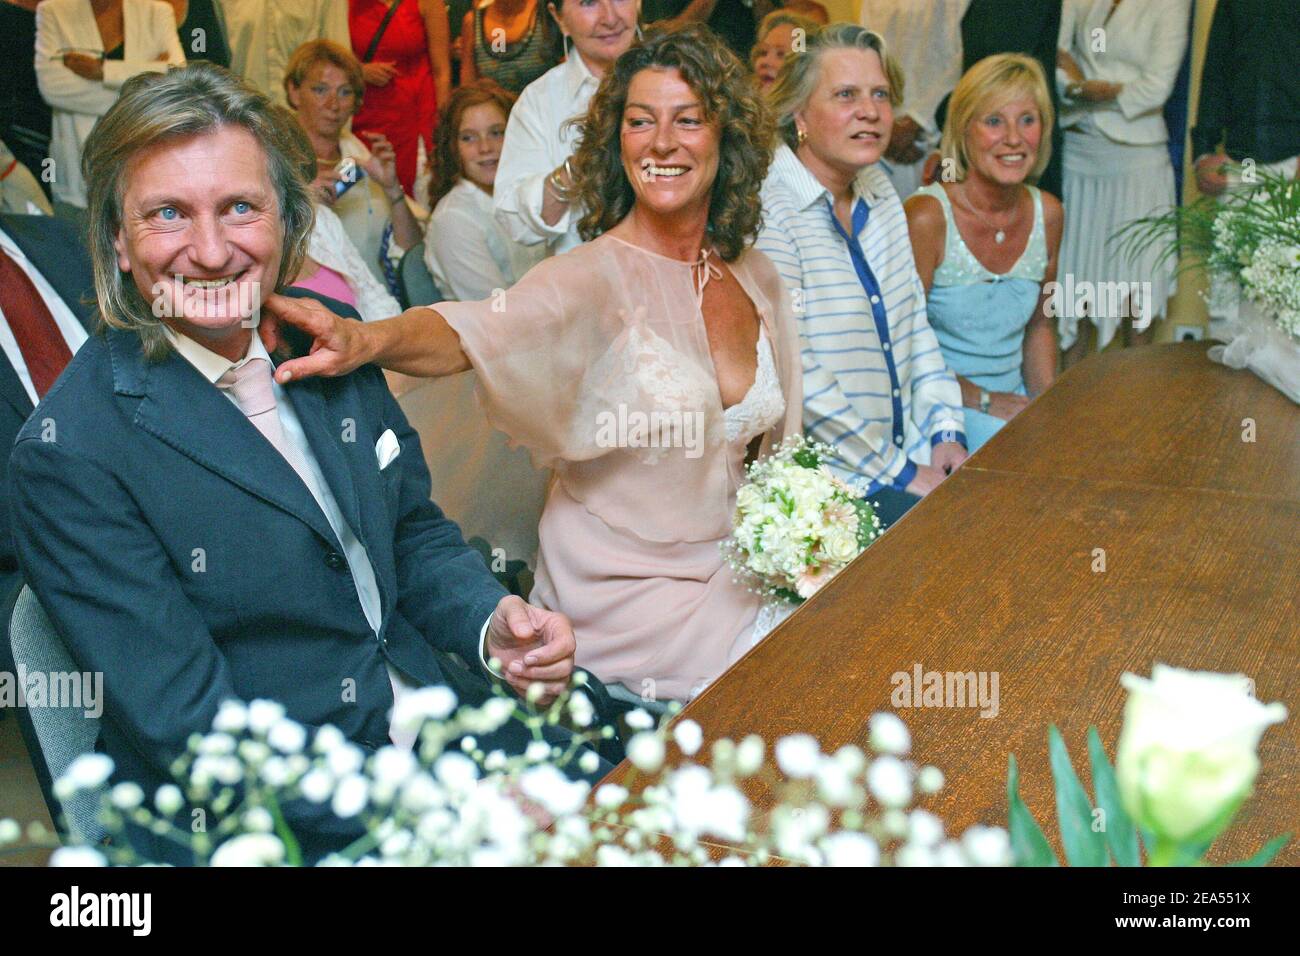 Lo yachtwoman francese Firenze Arthaud si sposa con Eric Charpentier, nell'isola di Porquerolles, Francia meridionale, il 23 settembre 2005. Foto di Gerald Holubowicz/ABACAPRESS.COM Foto Stock